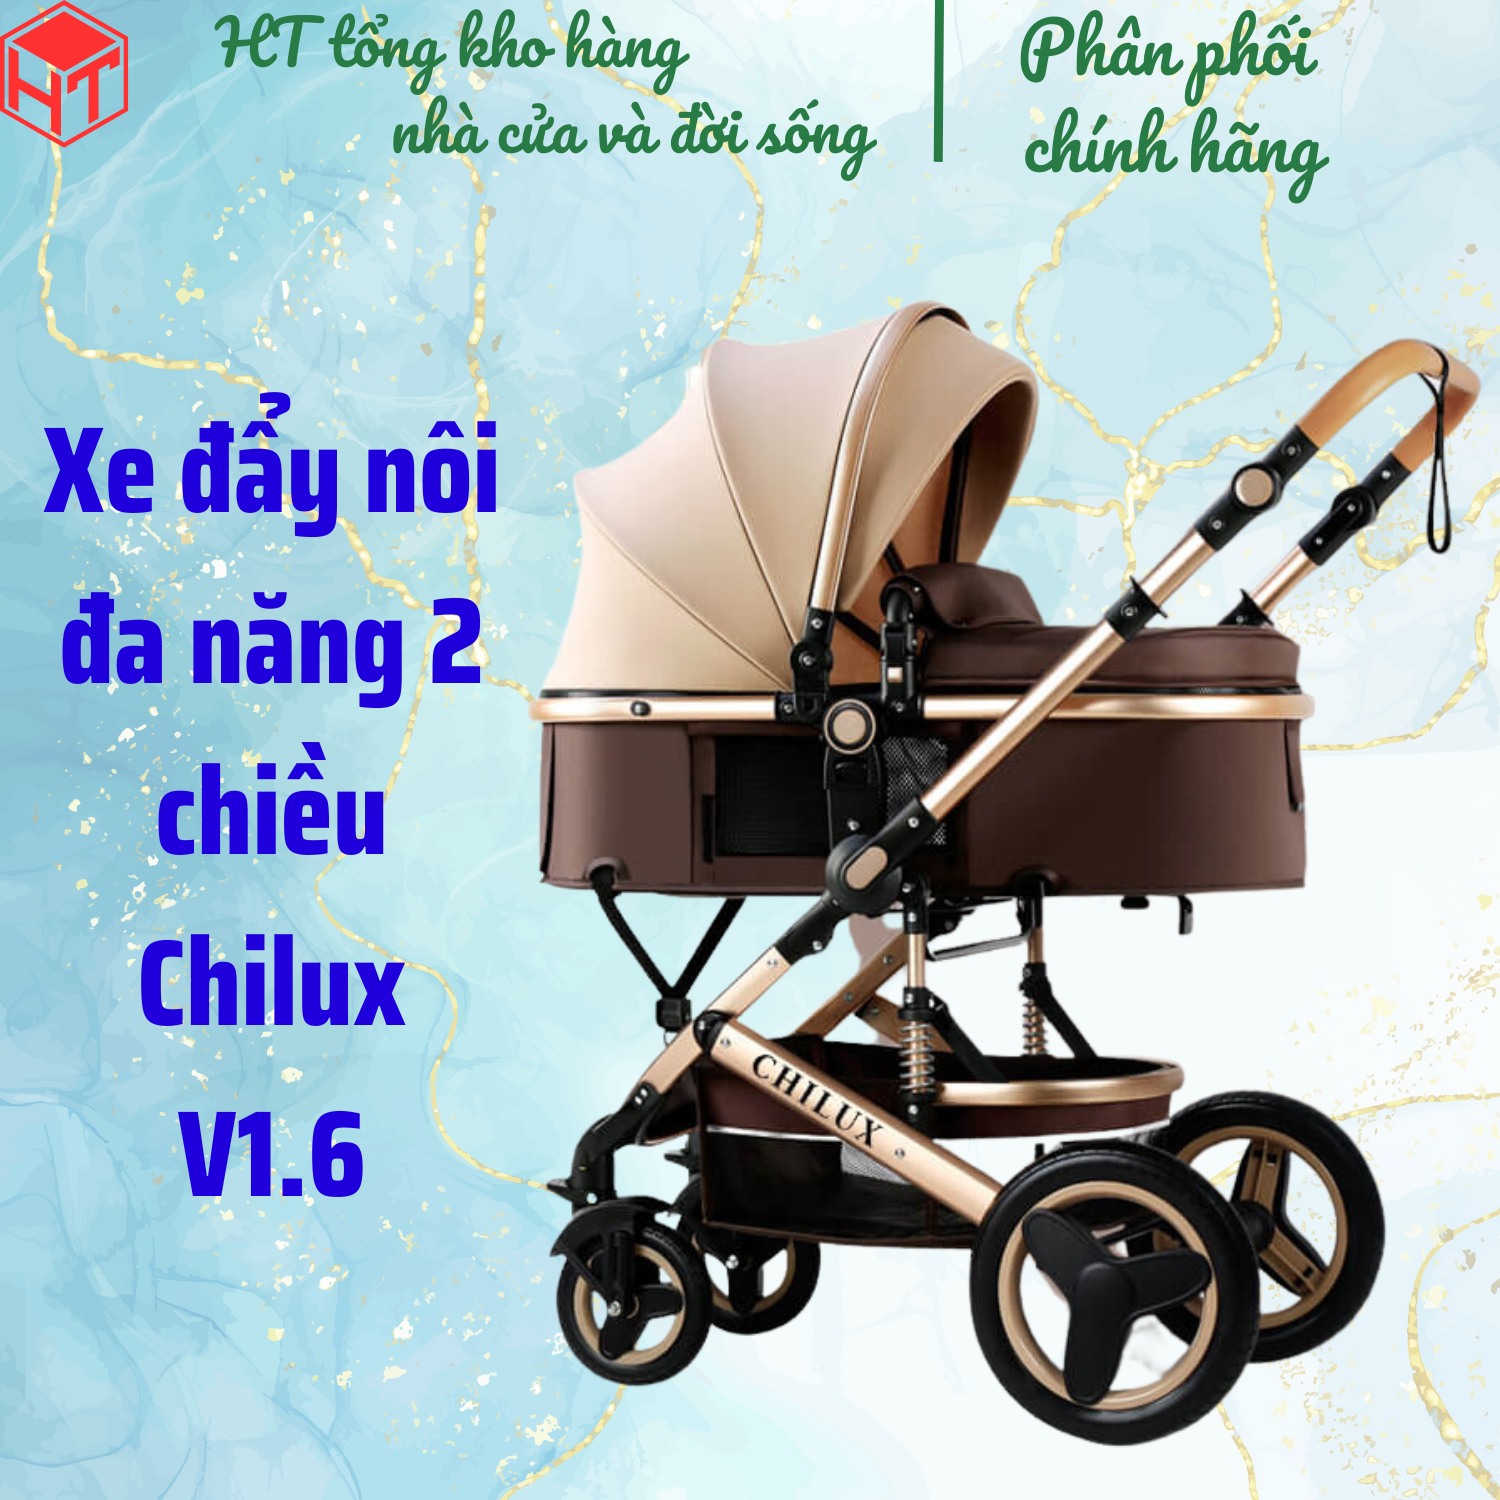 Xe đẩy nôi đa năng 2 chiều Chilux V1.6, Xe đẩy cho bé Chilux V1.6